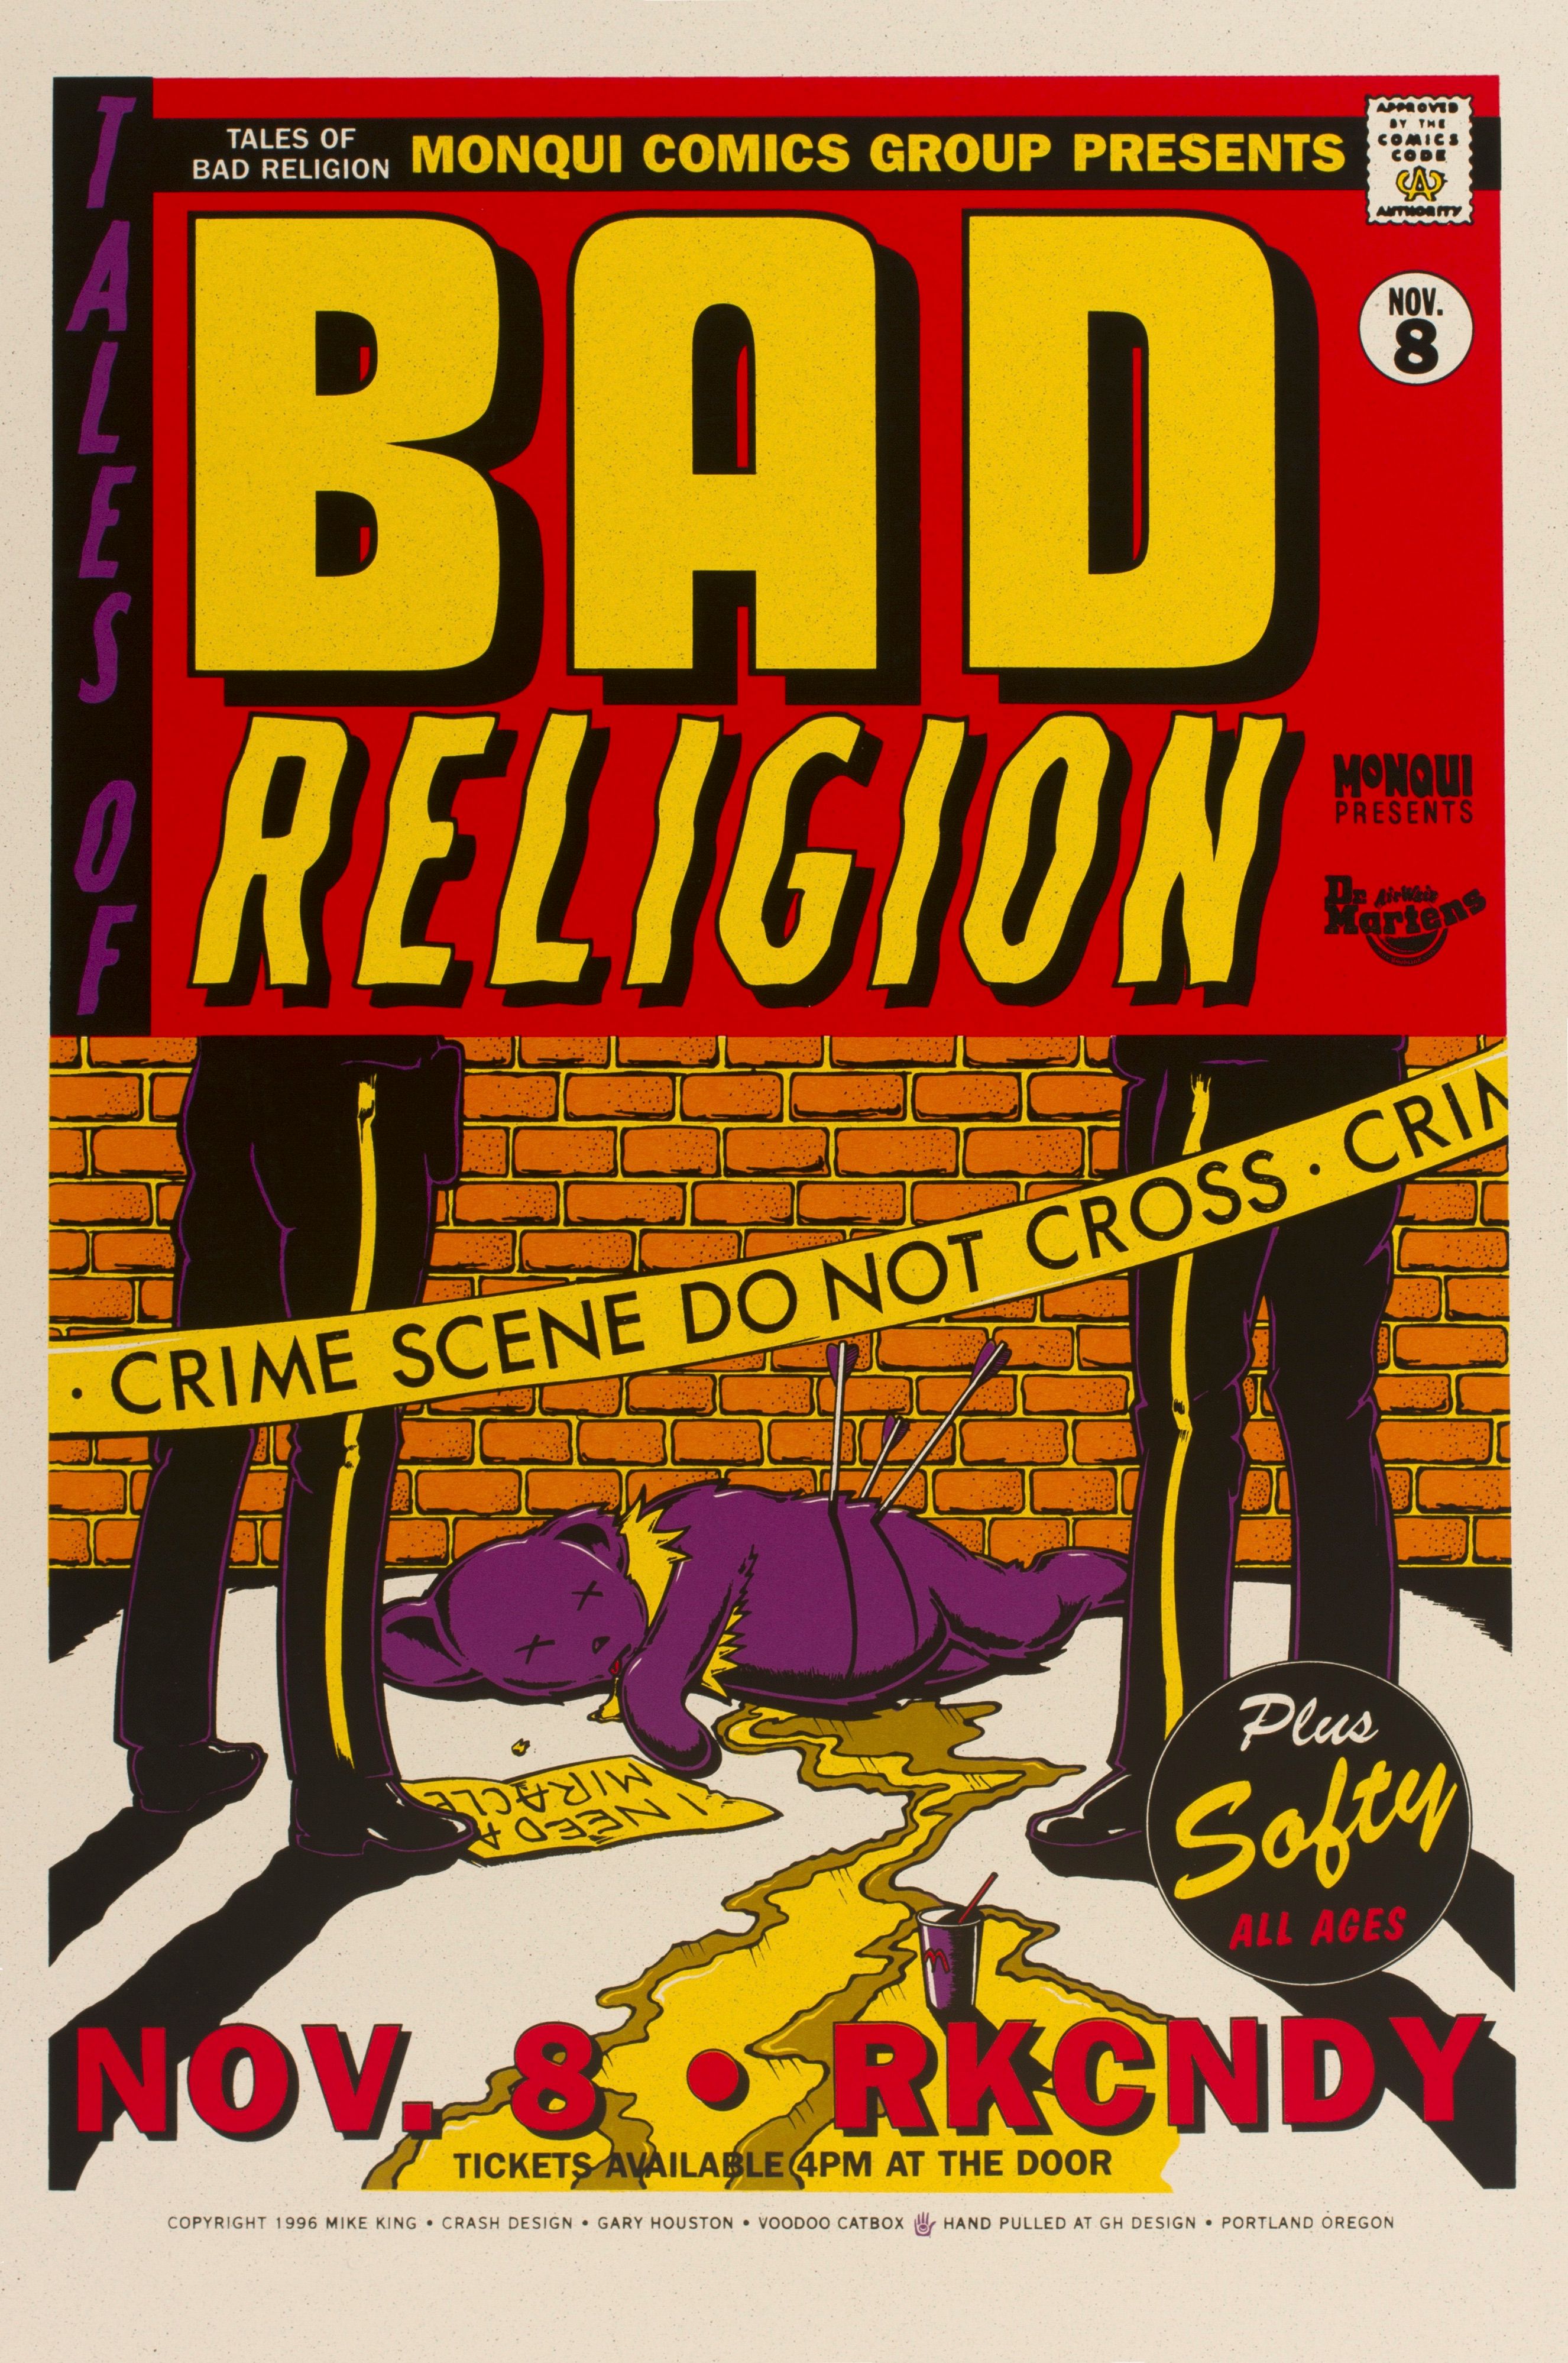 MXP-16.1 Bad Religion 2010 Rkcndy  Jun 22 Concert Poster